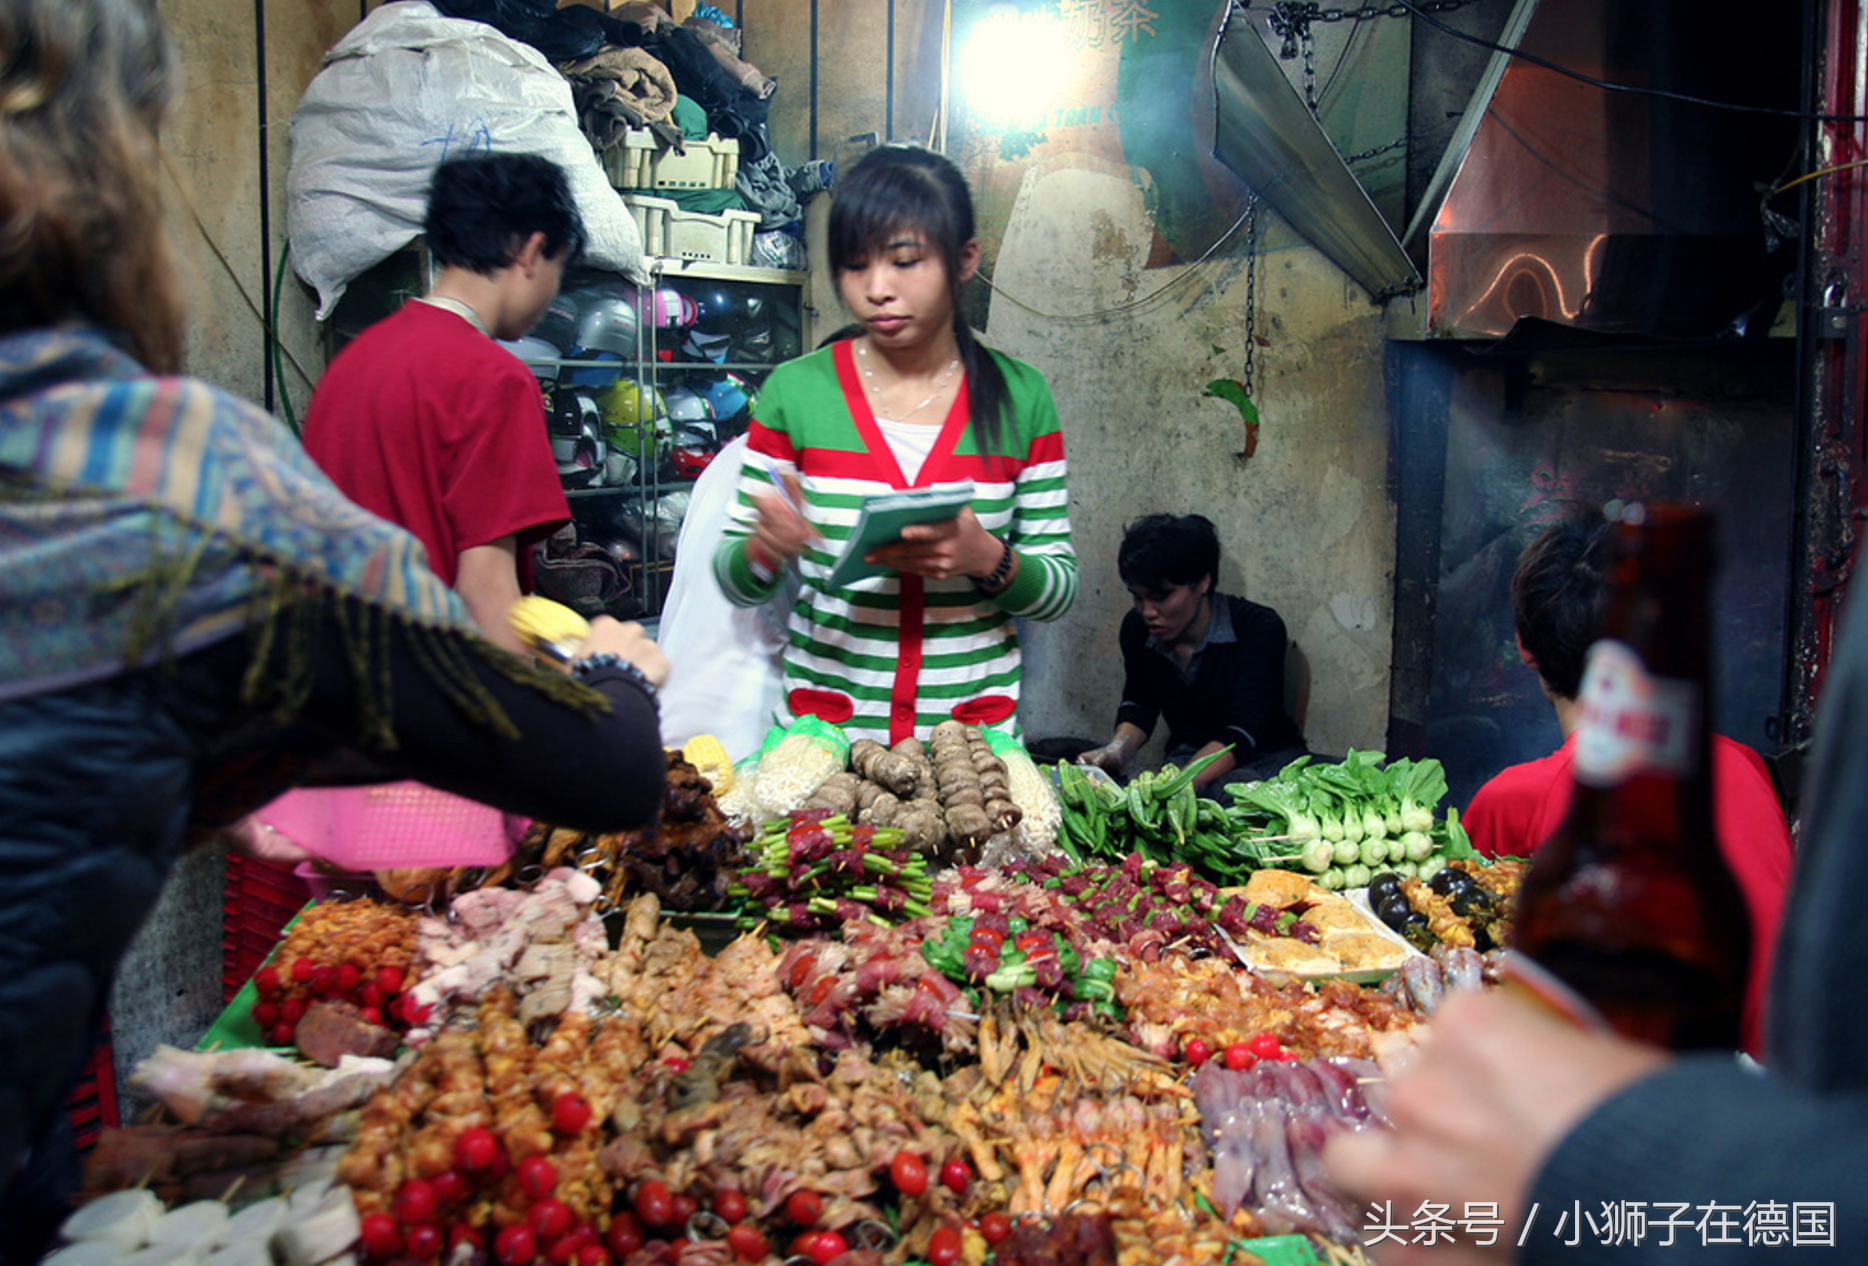 镜头下:做点小生意的越南妇女